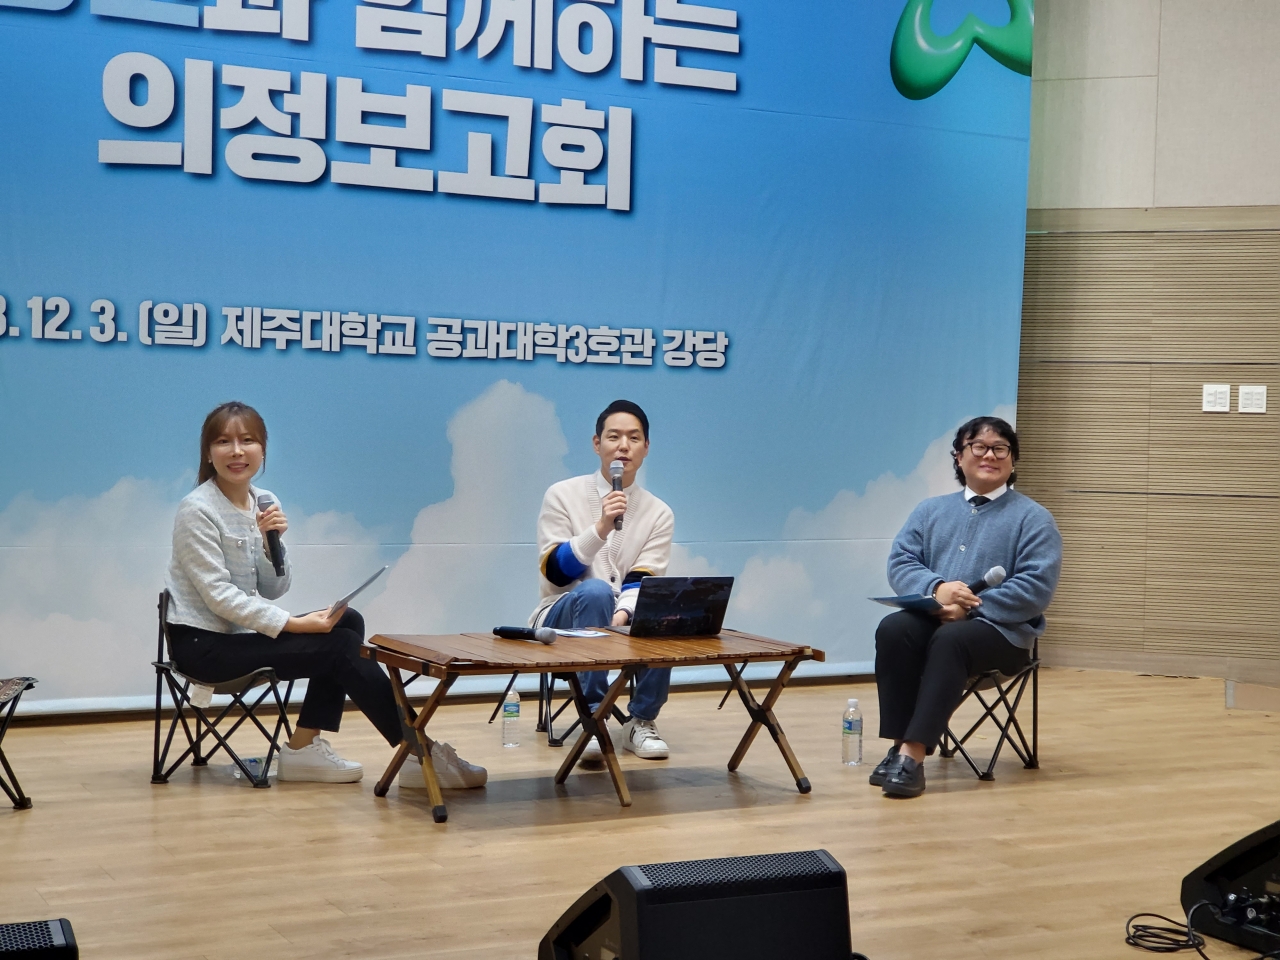 김한규 국회의원(더불어민주당·제주시을)은 3일 제주대학교 공과대학 3호관 강당에서 ‘청년과 함께하는 의정보고회’를 개최했다.